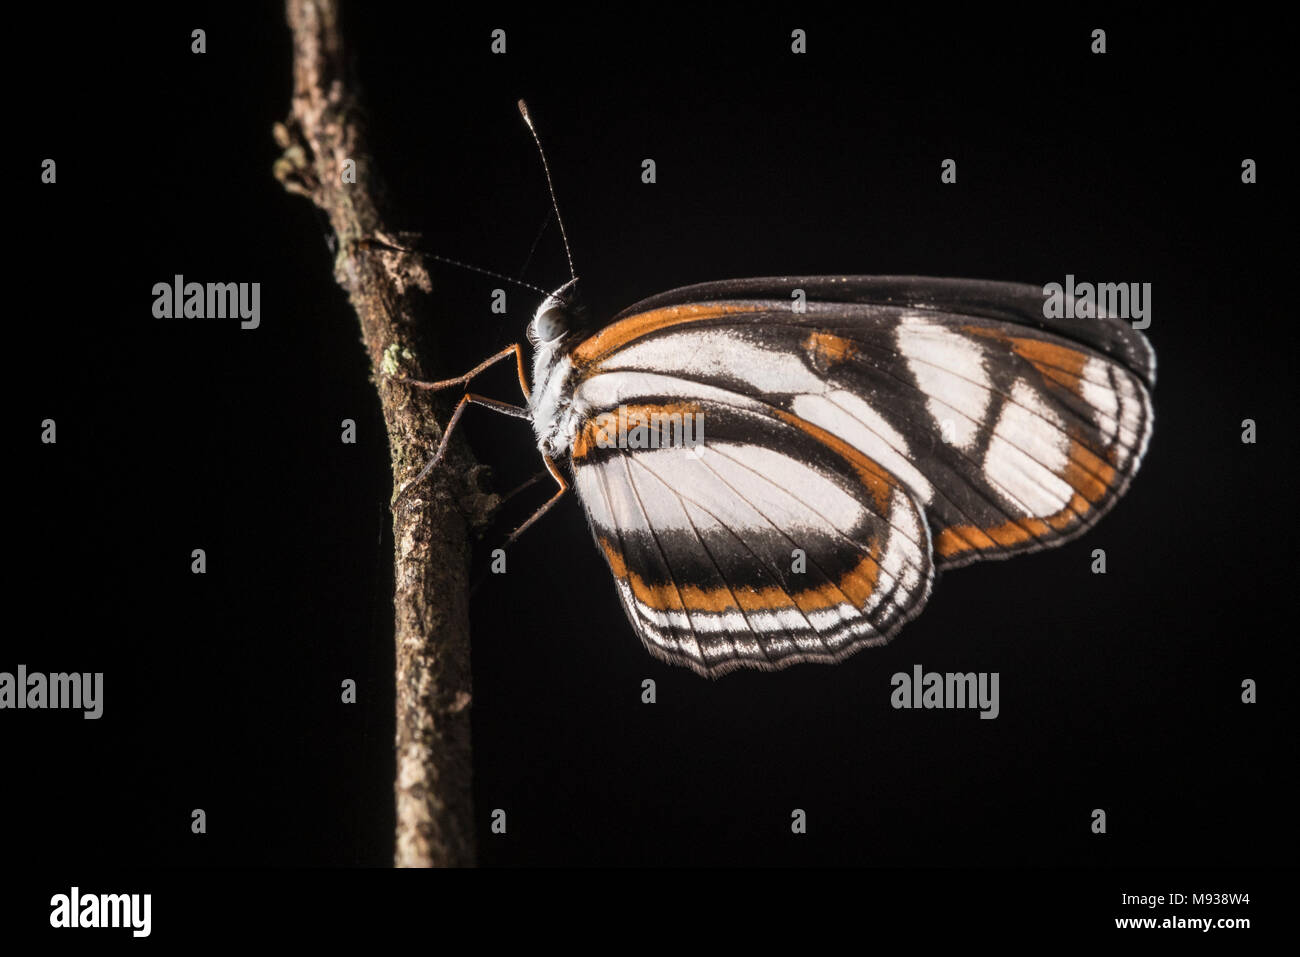 Una mariposa Heliconius desde Perú, esta especie ha sido utilizada en los influyentes mimetismo estudios para entender la ecología y evolución. Foto de stock